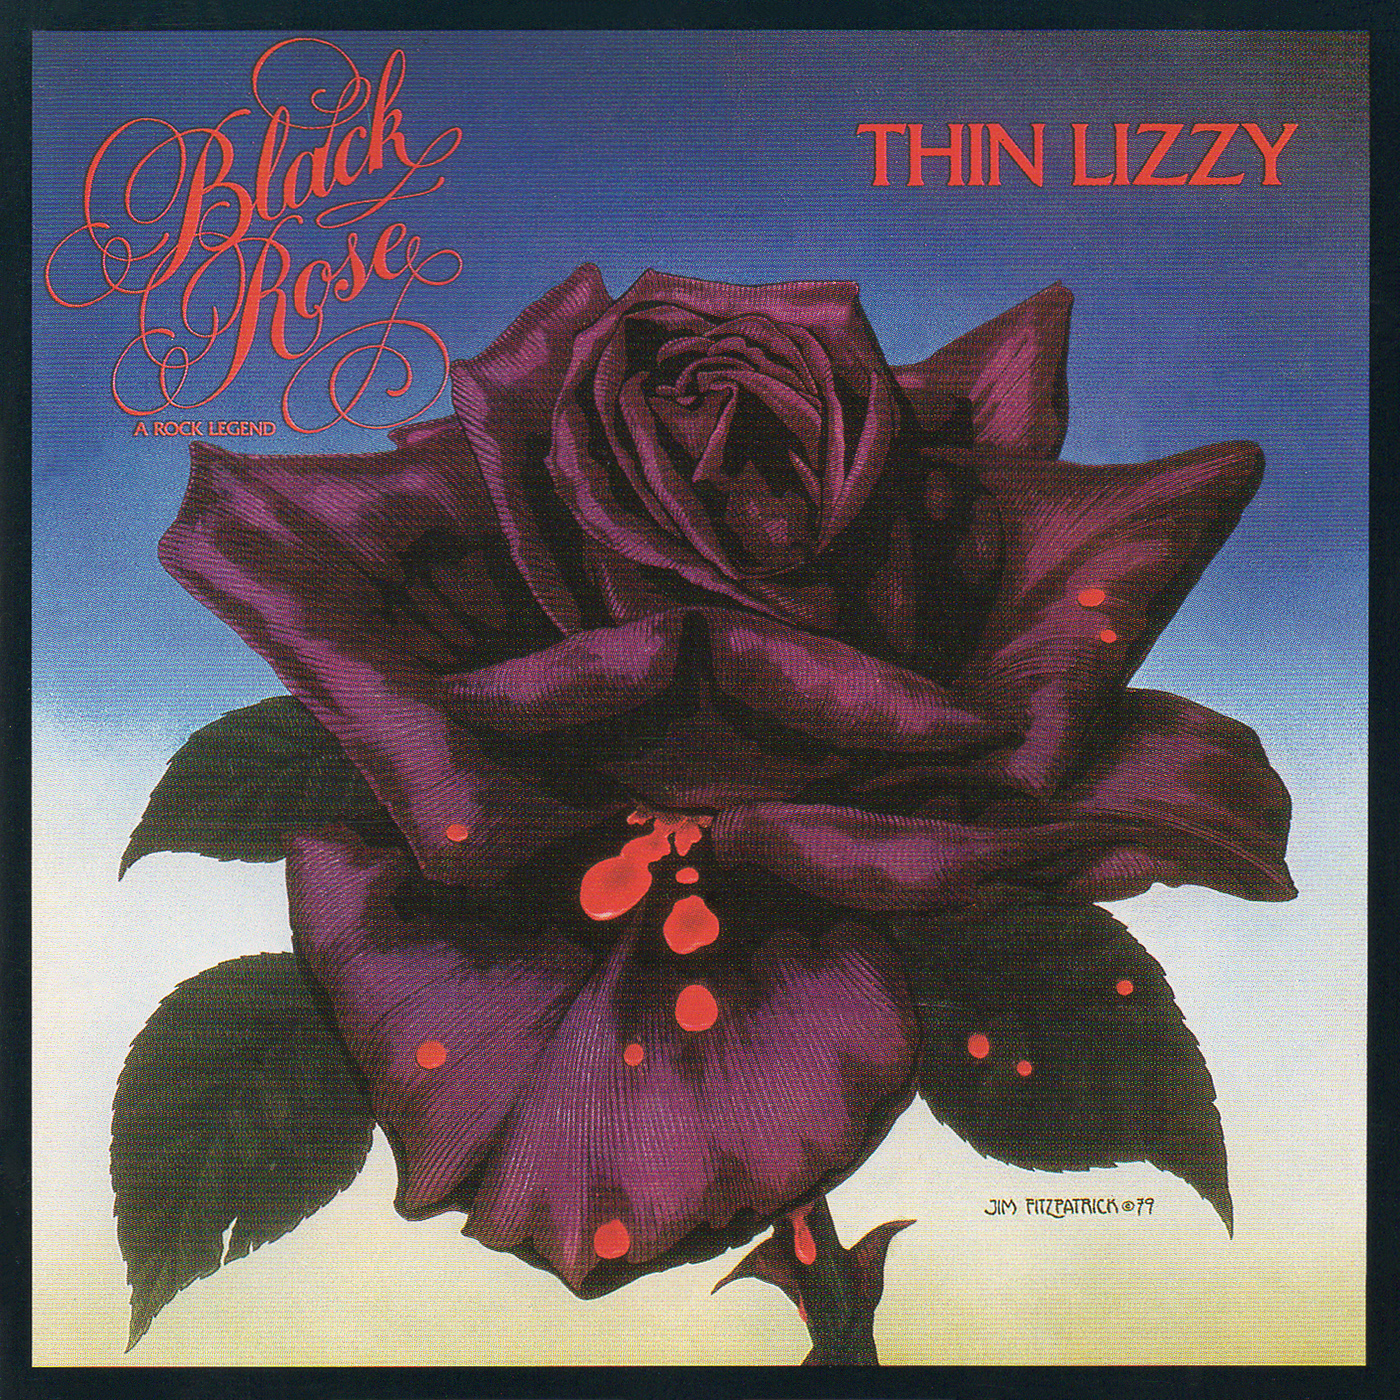 Thin Lizzie-1979-Black Rose [830 392-2]